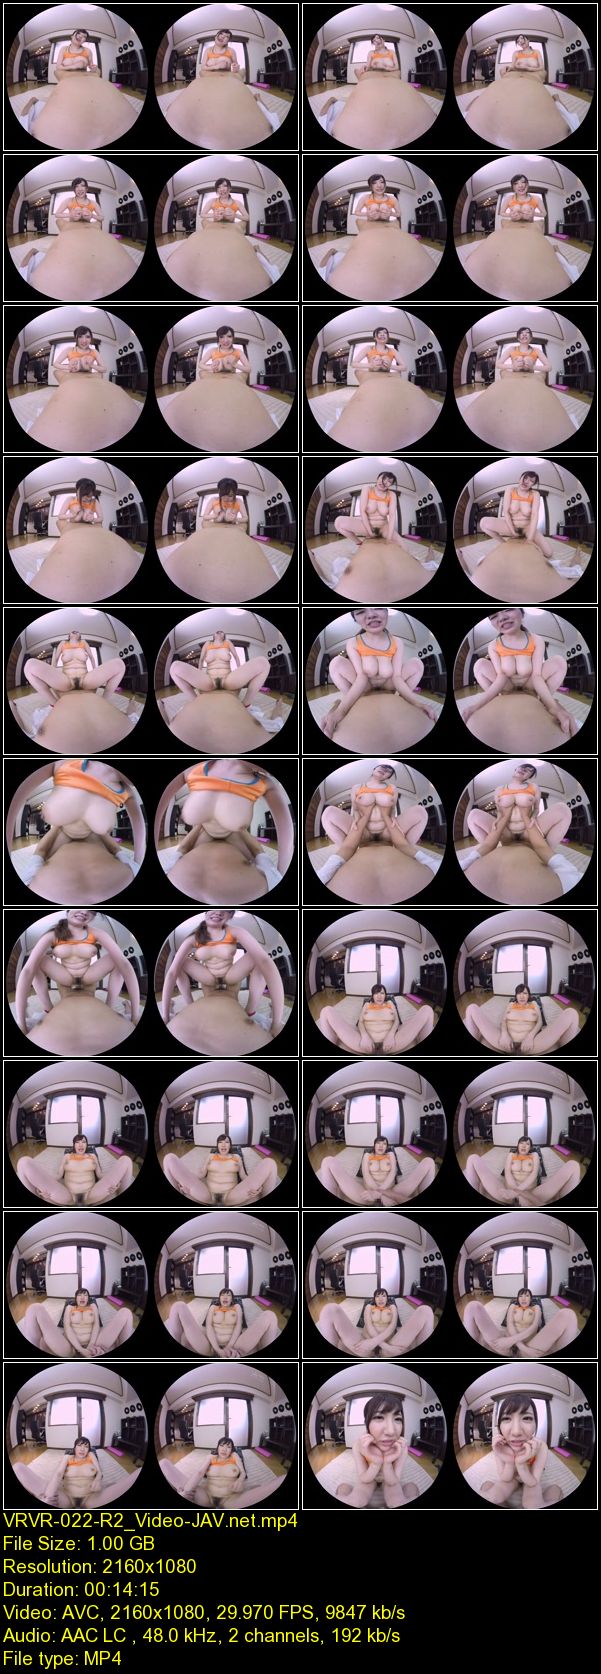 Download Japanese Adult Video [VRVR 022] 【VR AV】スポーツブラに張りつくデカ乳を揺さぶりながら義母がエクササイズ！目の前で見ていた僕のフル勃起チ○ポに欲情し、いきなり濃厚ベロキス/強制オッパイ圧迫/しゃぶりつきフェラ！ 2018 12 07